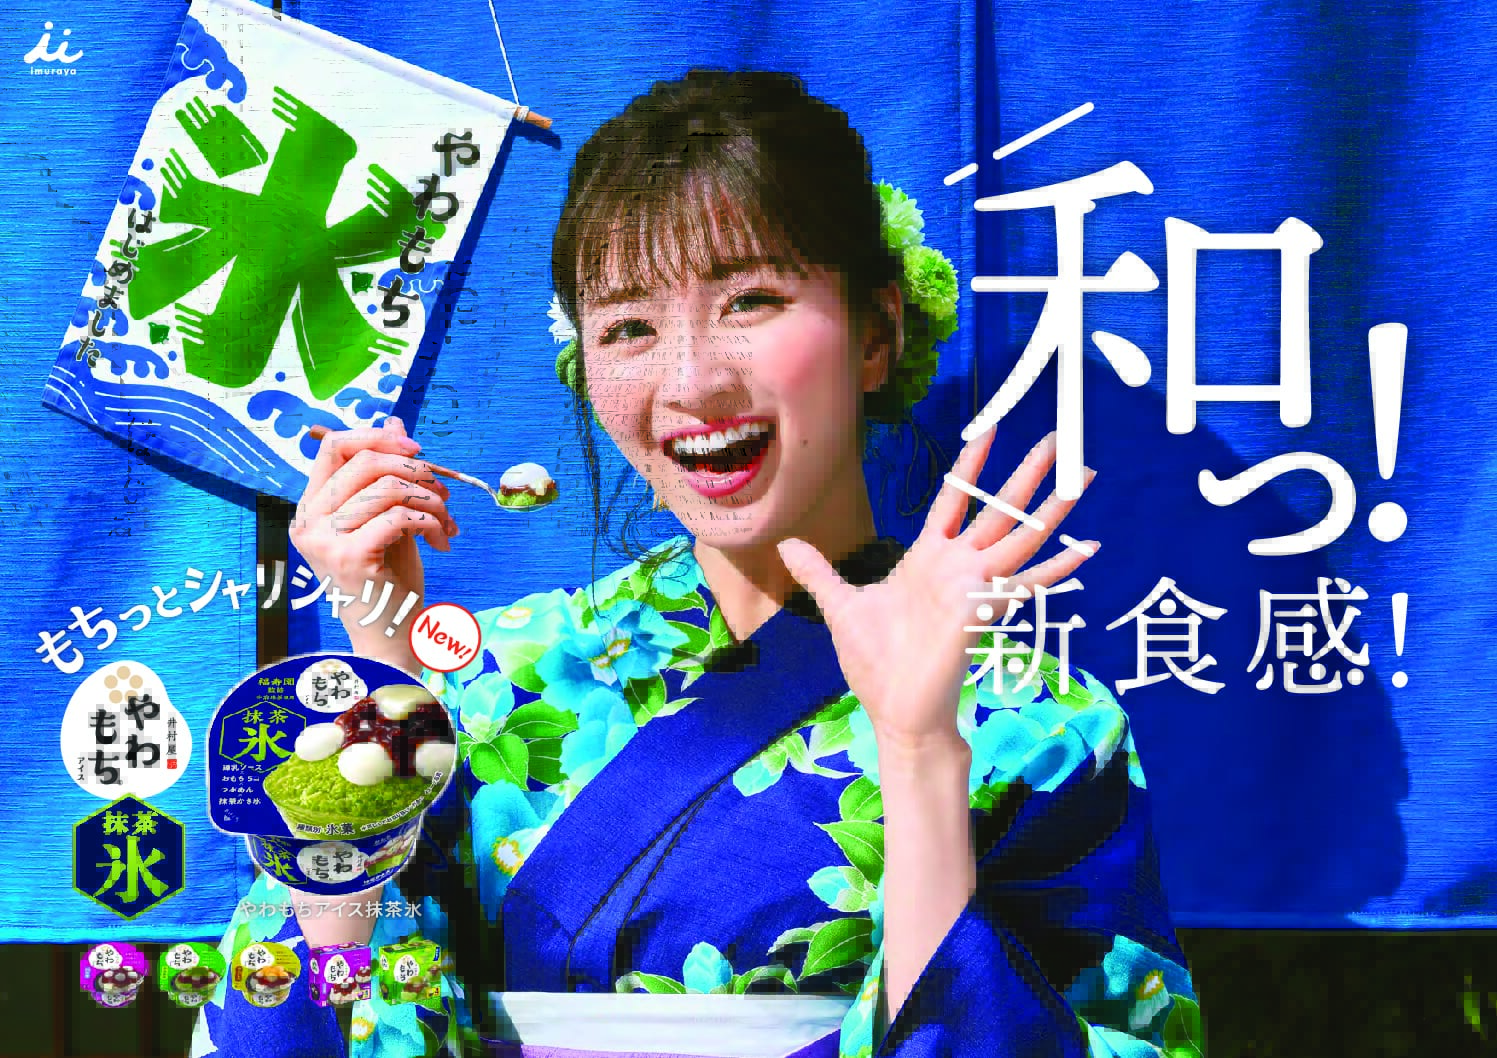 「やわもちアイス 抹茶氷」の新たな食感の感動を岡崎紗絵さんのキュートで素直な表情で表現！